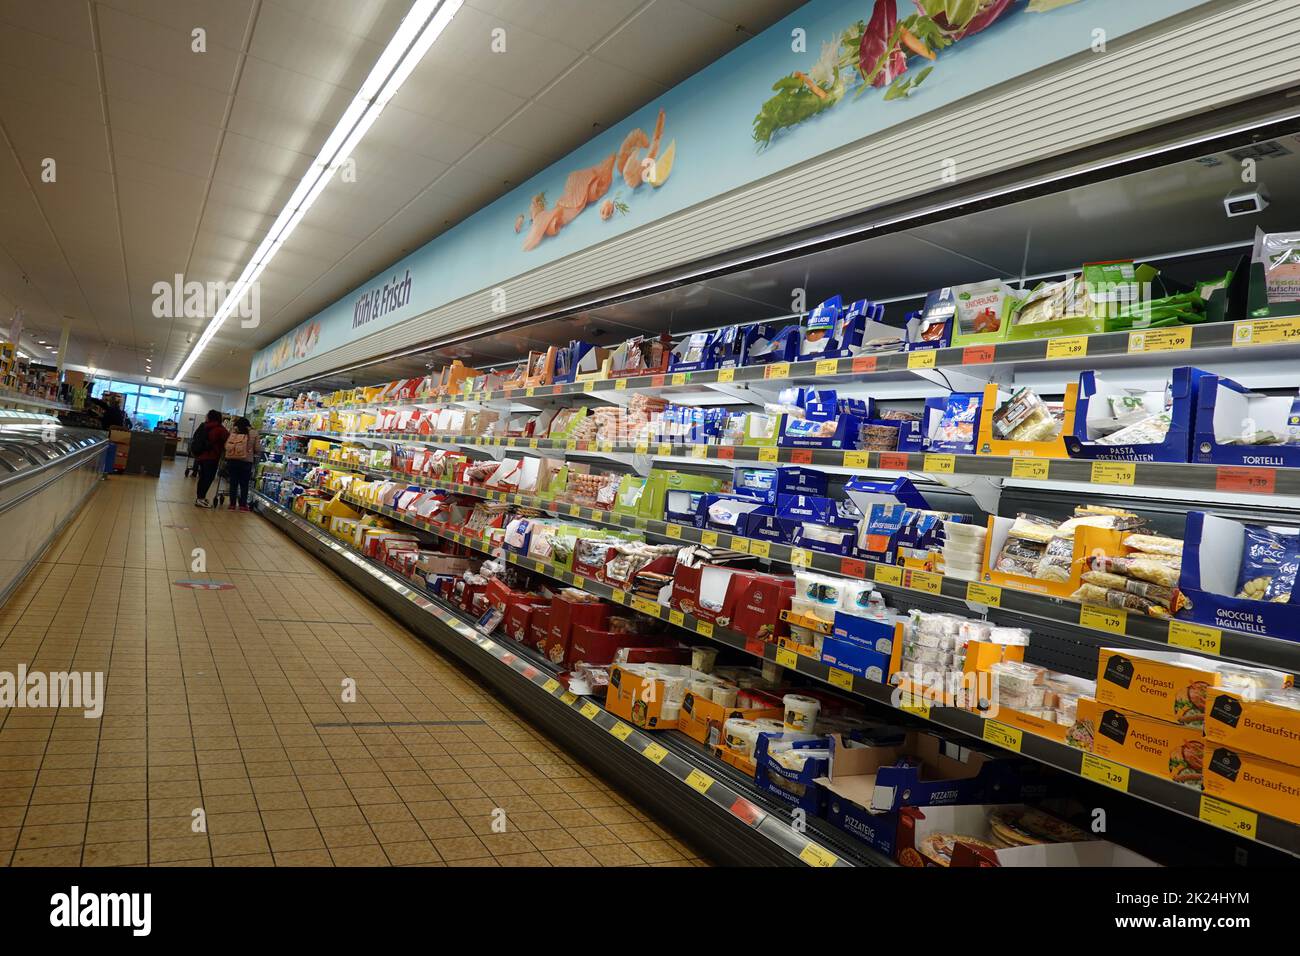 Kühltheke in einem Supermarkt - Symbolbild Stock Photo